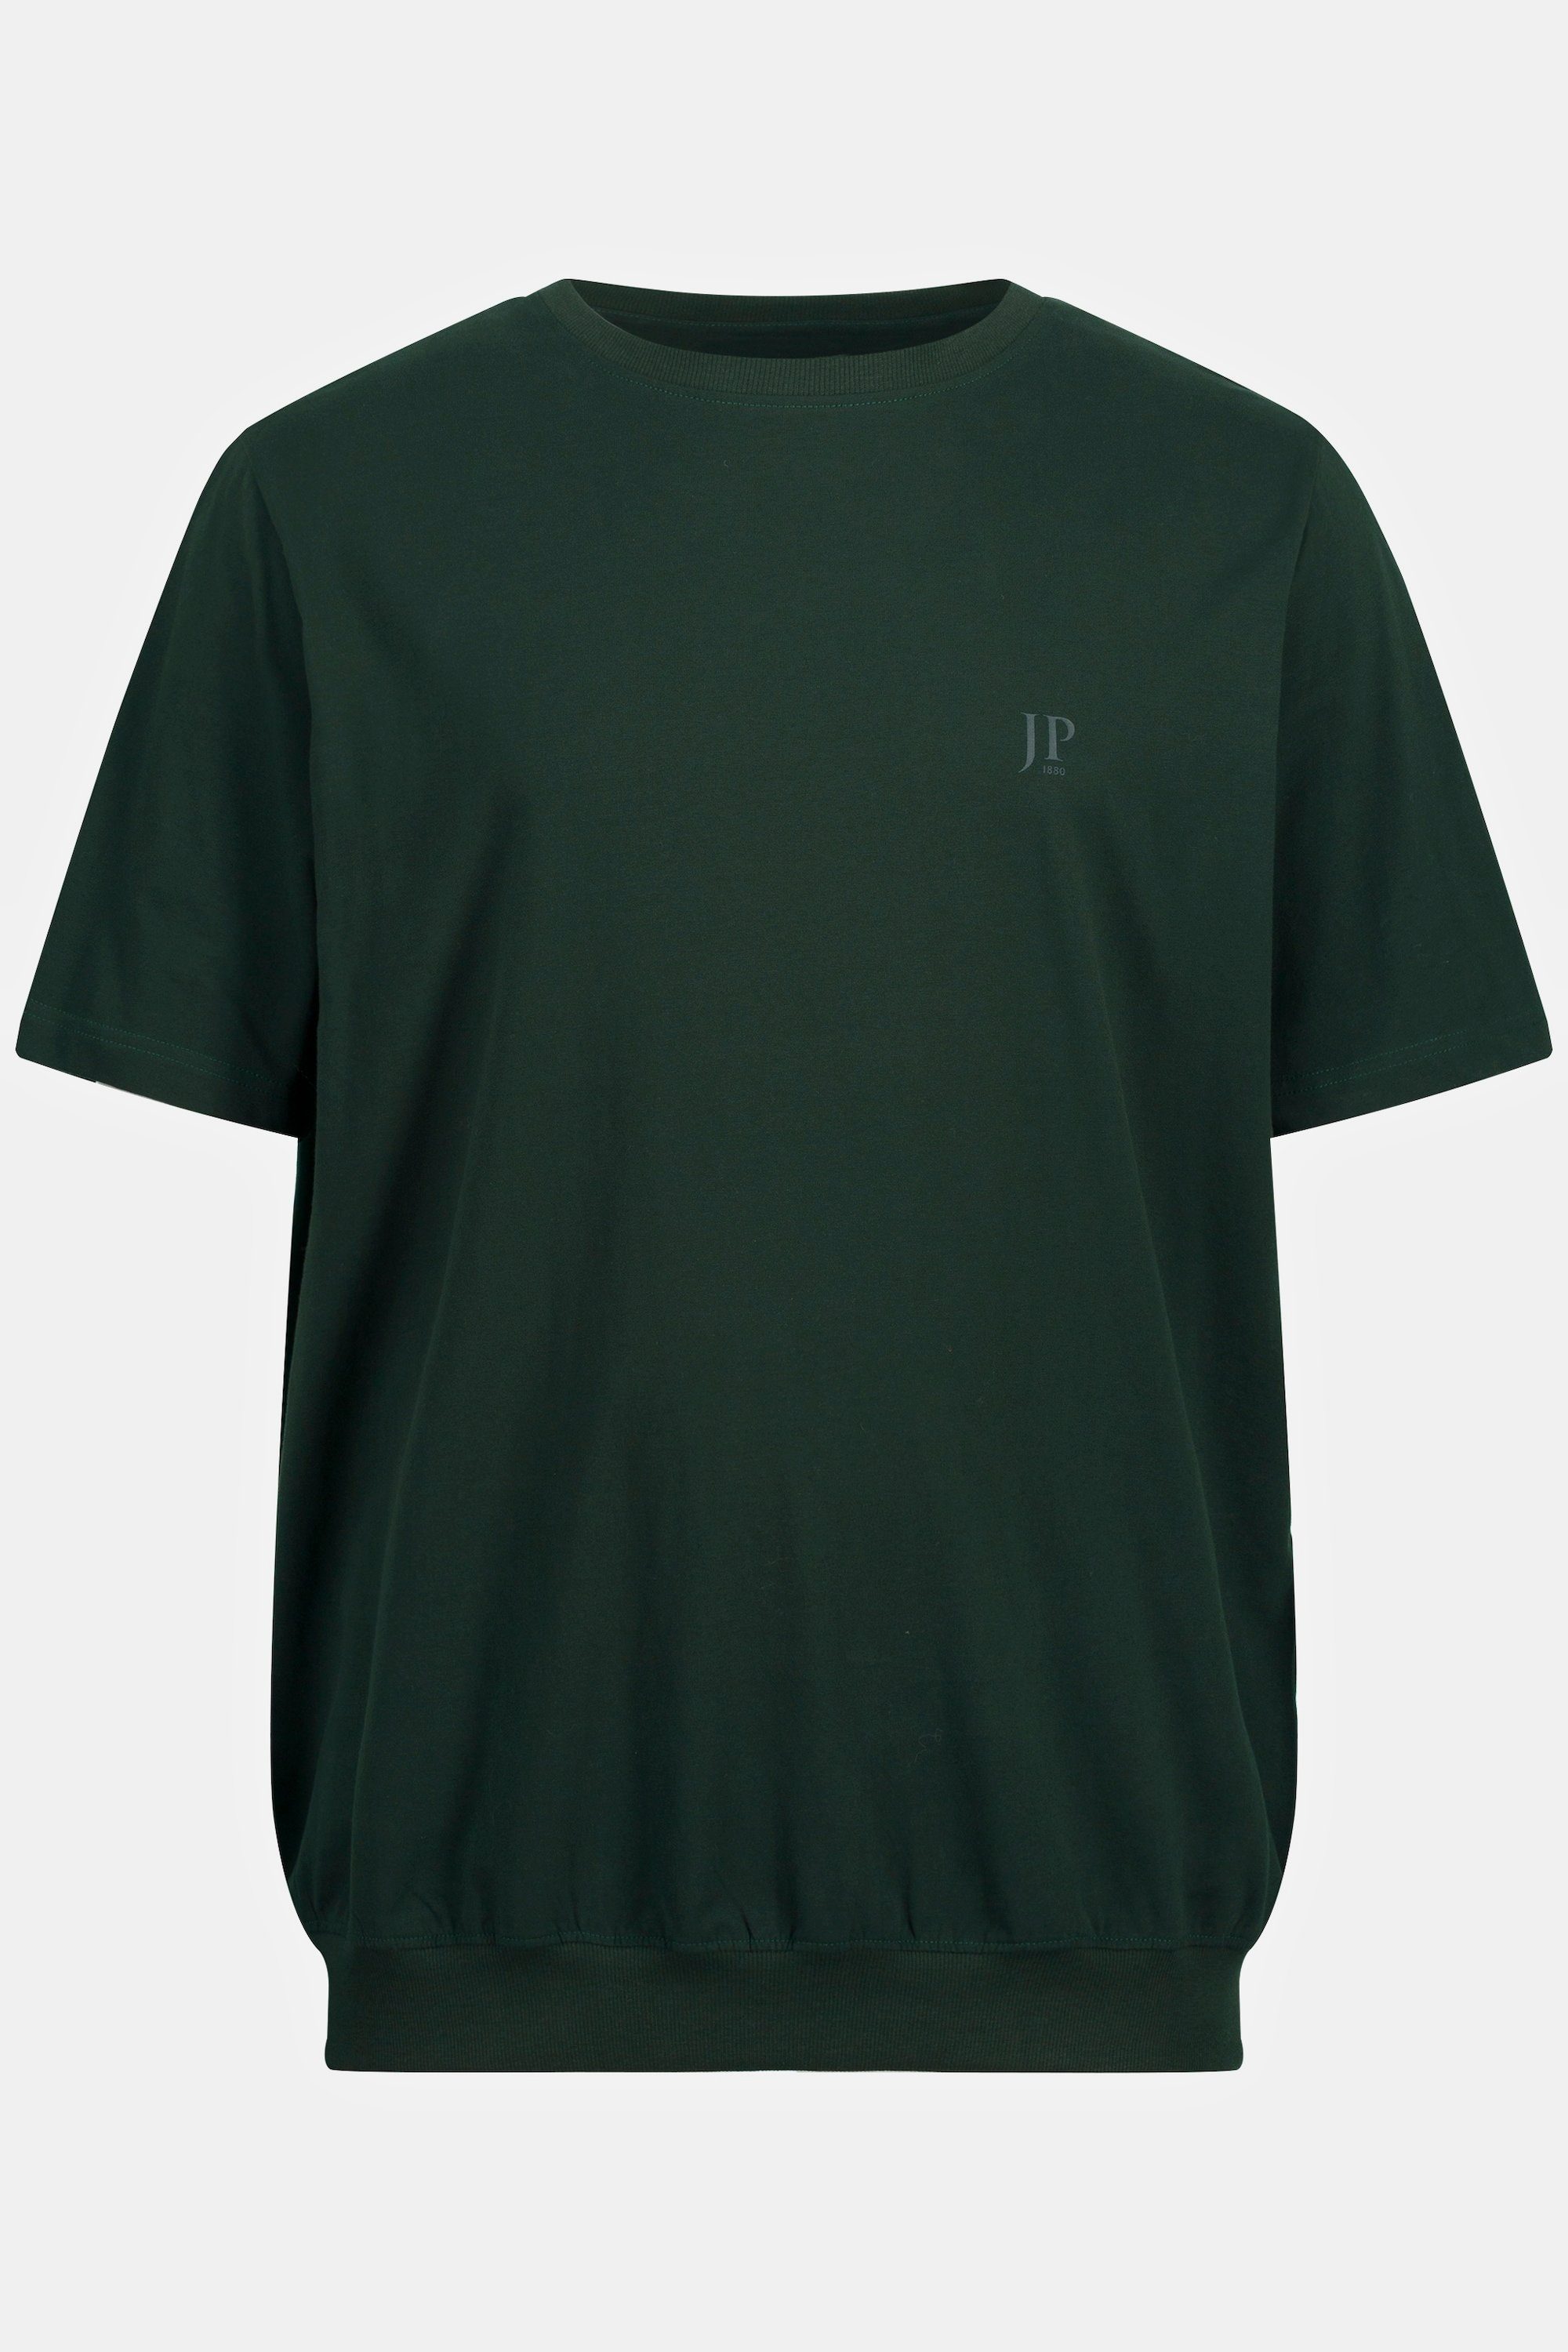 JP1880 bis XXL Halbarm 10XL T-Shirt Bauchfit Basic tannengrün T-Shirt